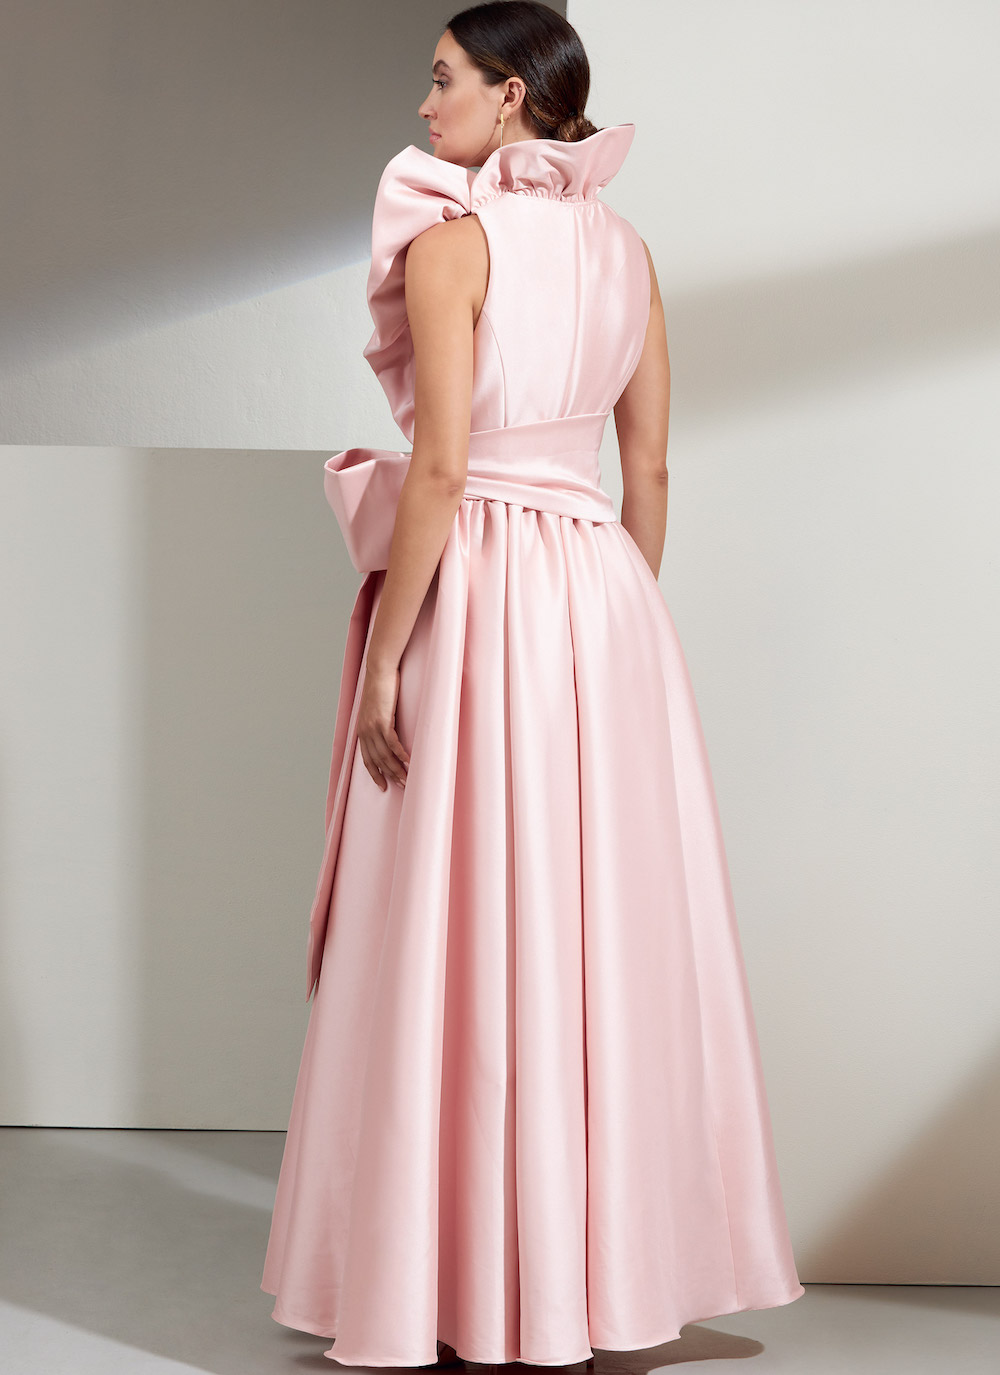 Vogue® Patterns Papierschnittmuster Damen - Kleid - V1861